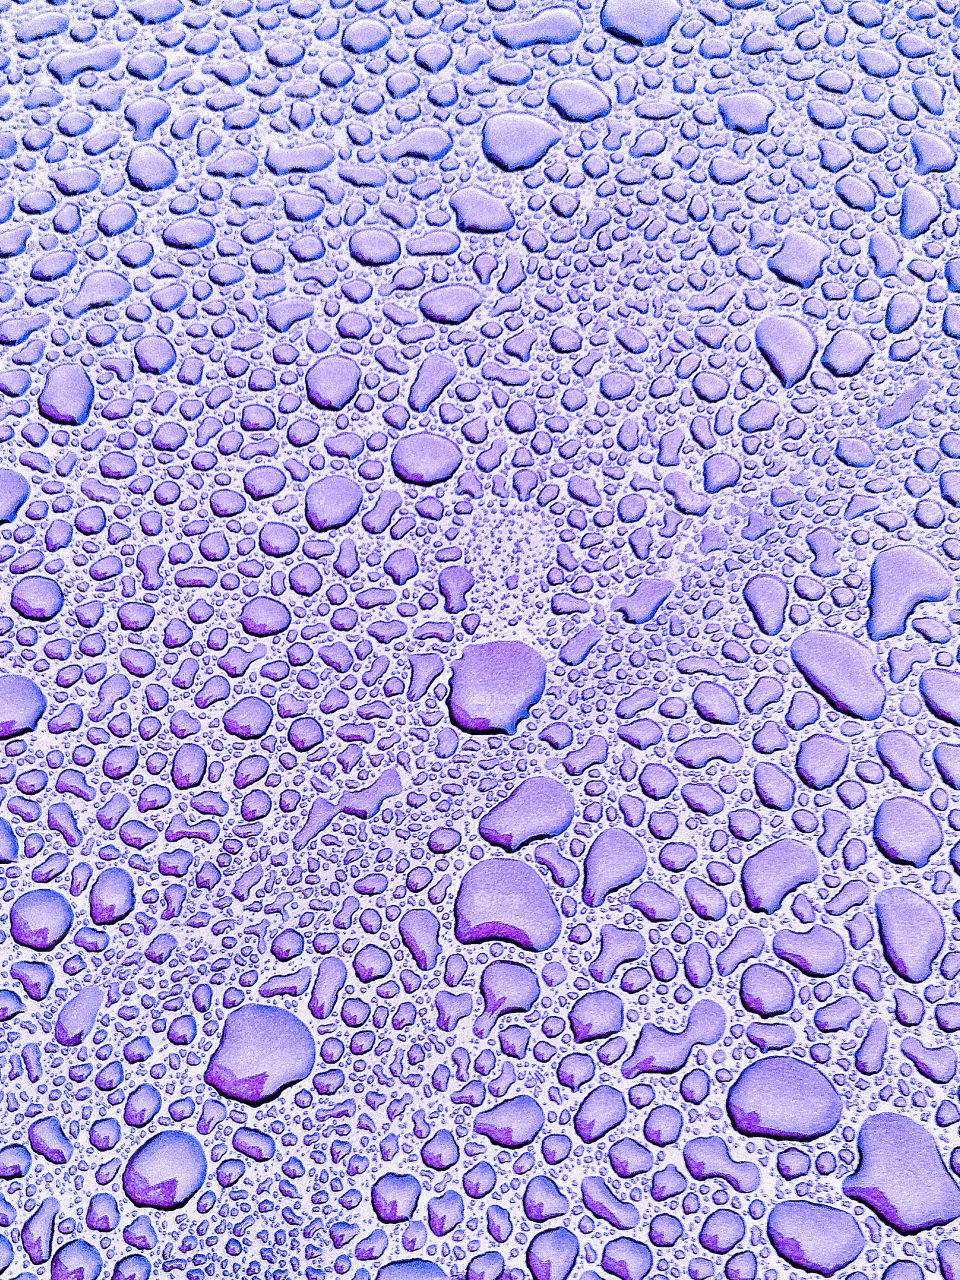 Purple water drops